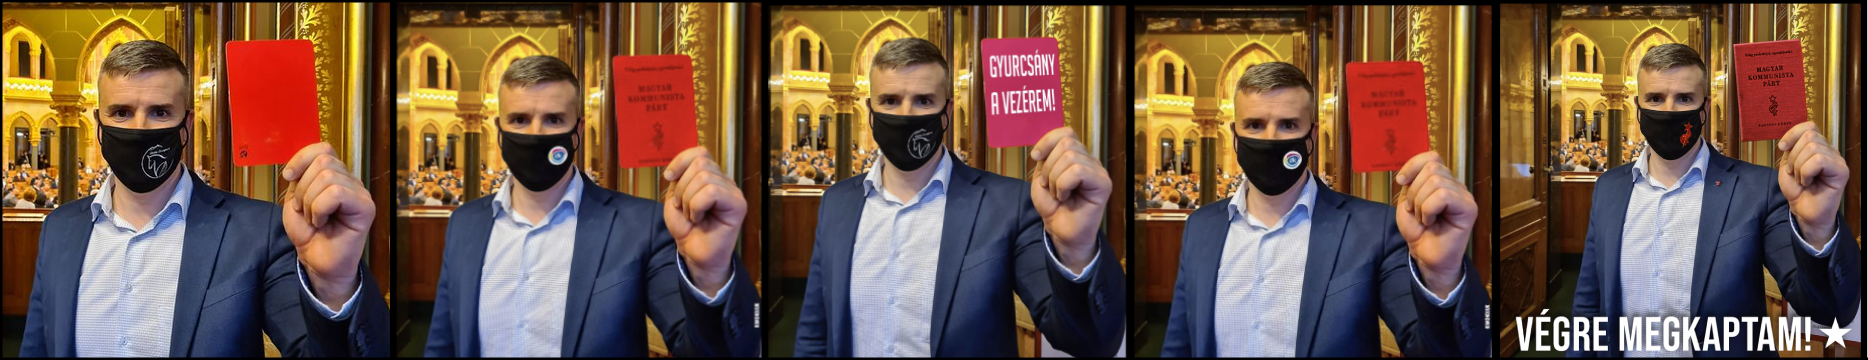 1. kép: (eredeti): Jakab Péter hivatalos Facebook-oldala (piros lapot mutat fel Orbánnak a Parlamentben), 2021.április 26. 4:28 PM, 2. kép (mém):  KIMONDJUK (Jakab a Magyar Kommunista Párt tagsági könyvét mutatja fel), 2021.04.26. 5:42 PM, 3. kép (mém): ELÉG (Jakab a “Gyurcsány a vezérem” kártyával), 2021.04.27. 09:25 AM, 4. kép (mém): Magyar Láng (Jakab a Magyar Kommunista Párt tagsági könyvét mutatja fel), 2021.04.28. 10:19 AM, 5. kép: Bayer Zsolt hivatalos oldala, Megafon, (Jakab a Magyar Kommunista Párt tagsági könyvét mutatja fel) 2021.04.28. 7:21 PM. A poszt szövege: “”Hozzáteszem, a képet találtam a neten! Aki készítette, az vagy ügyes grafikus vagy időutazó!”